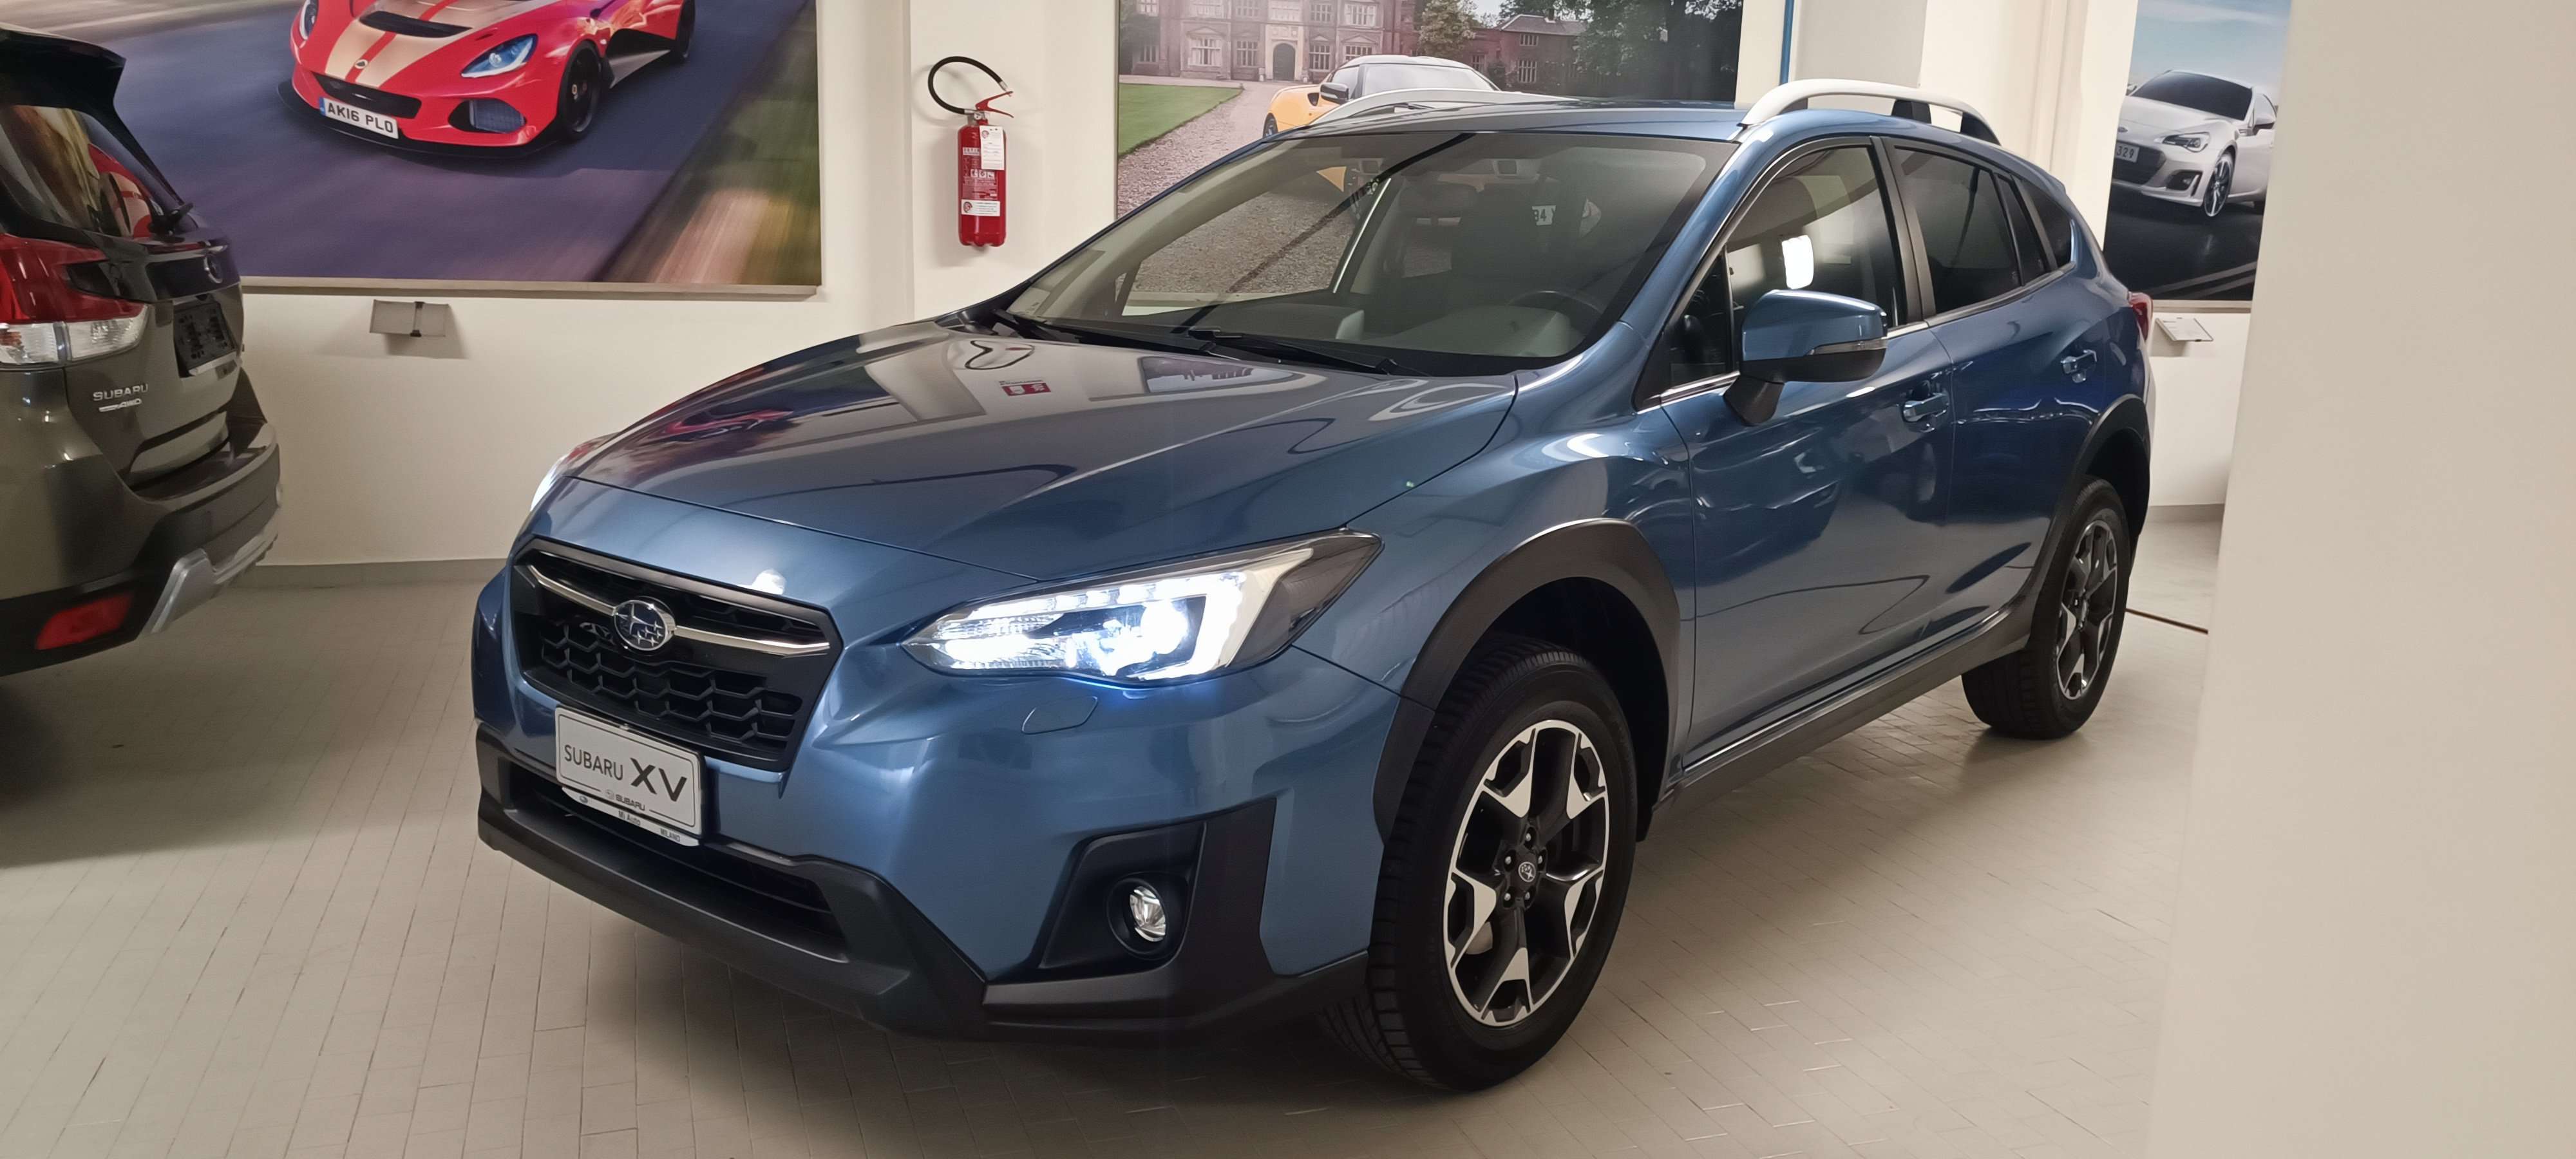 Subaru XV Off-Road/Pick-up in Blue used in Milano - MI for € 22,500.-